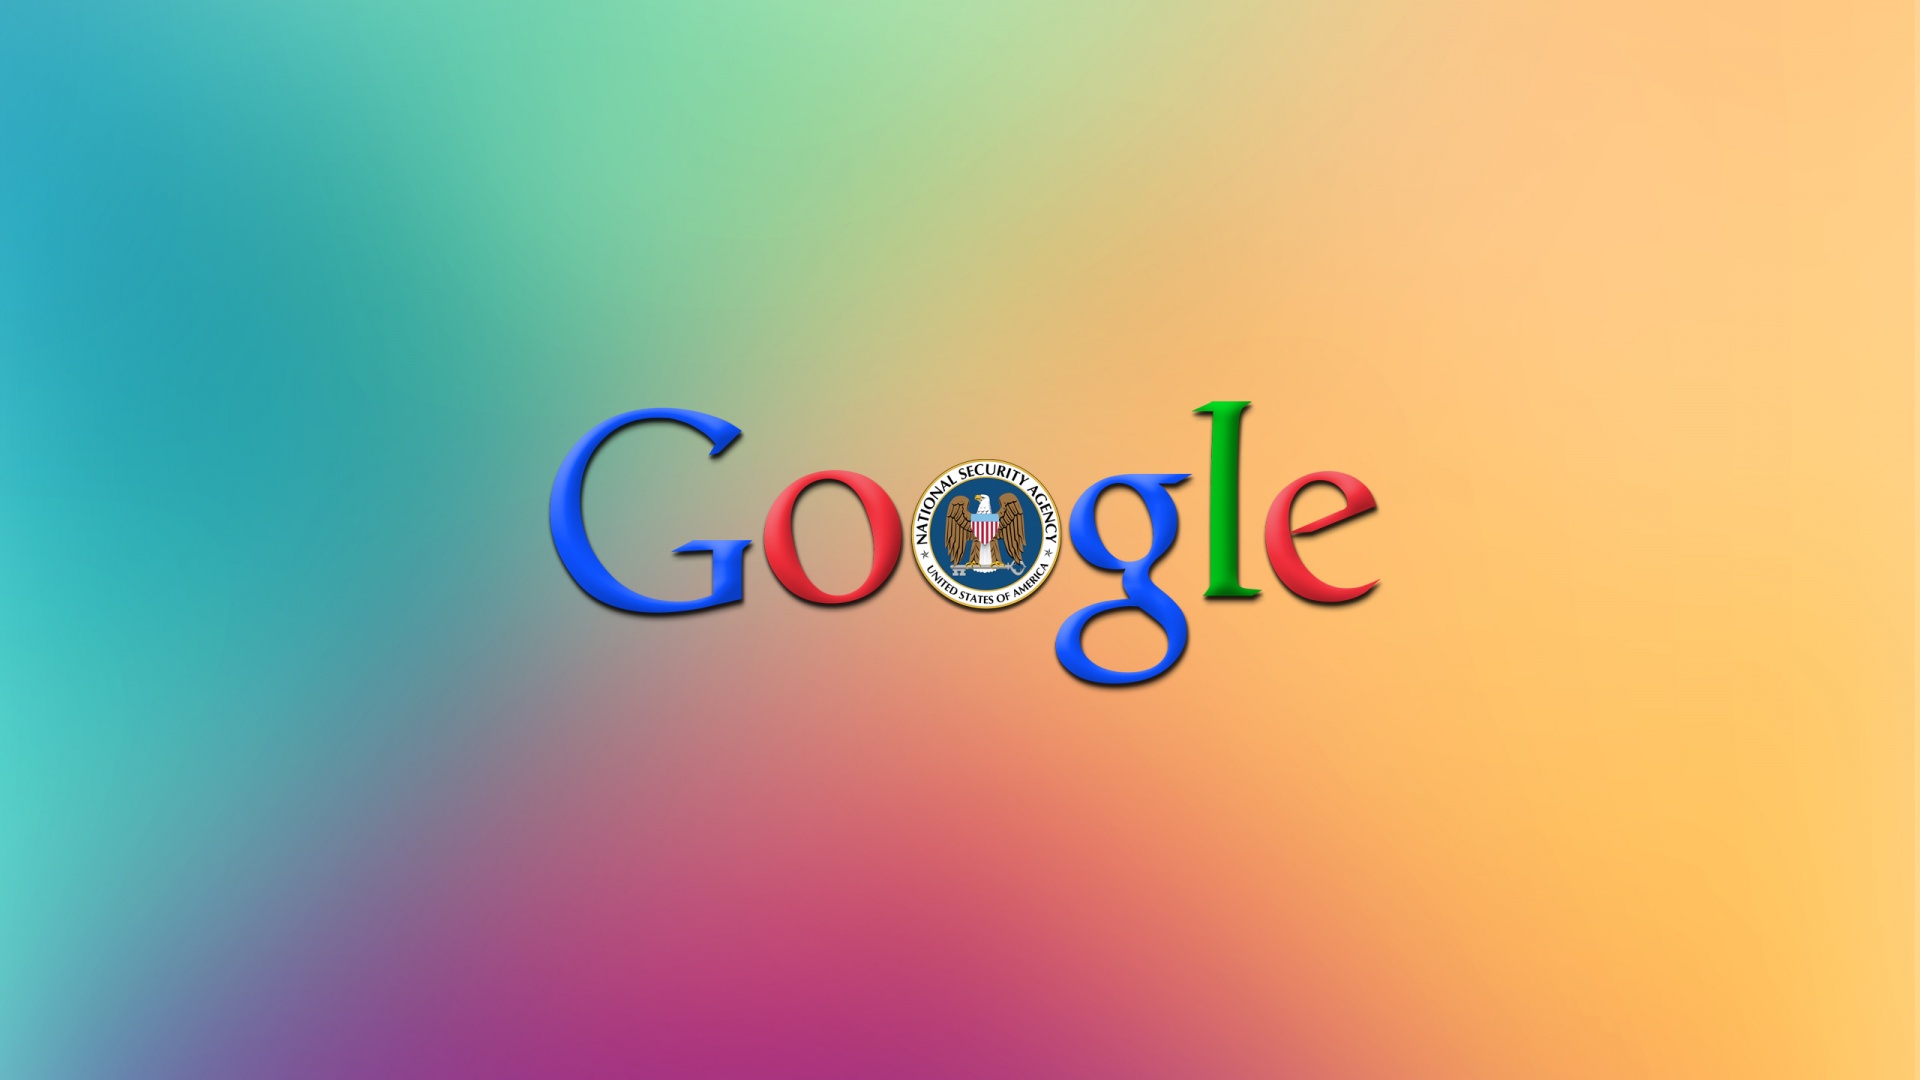 Google Image Desktop Background On